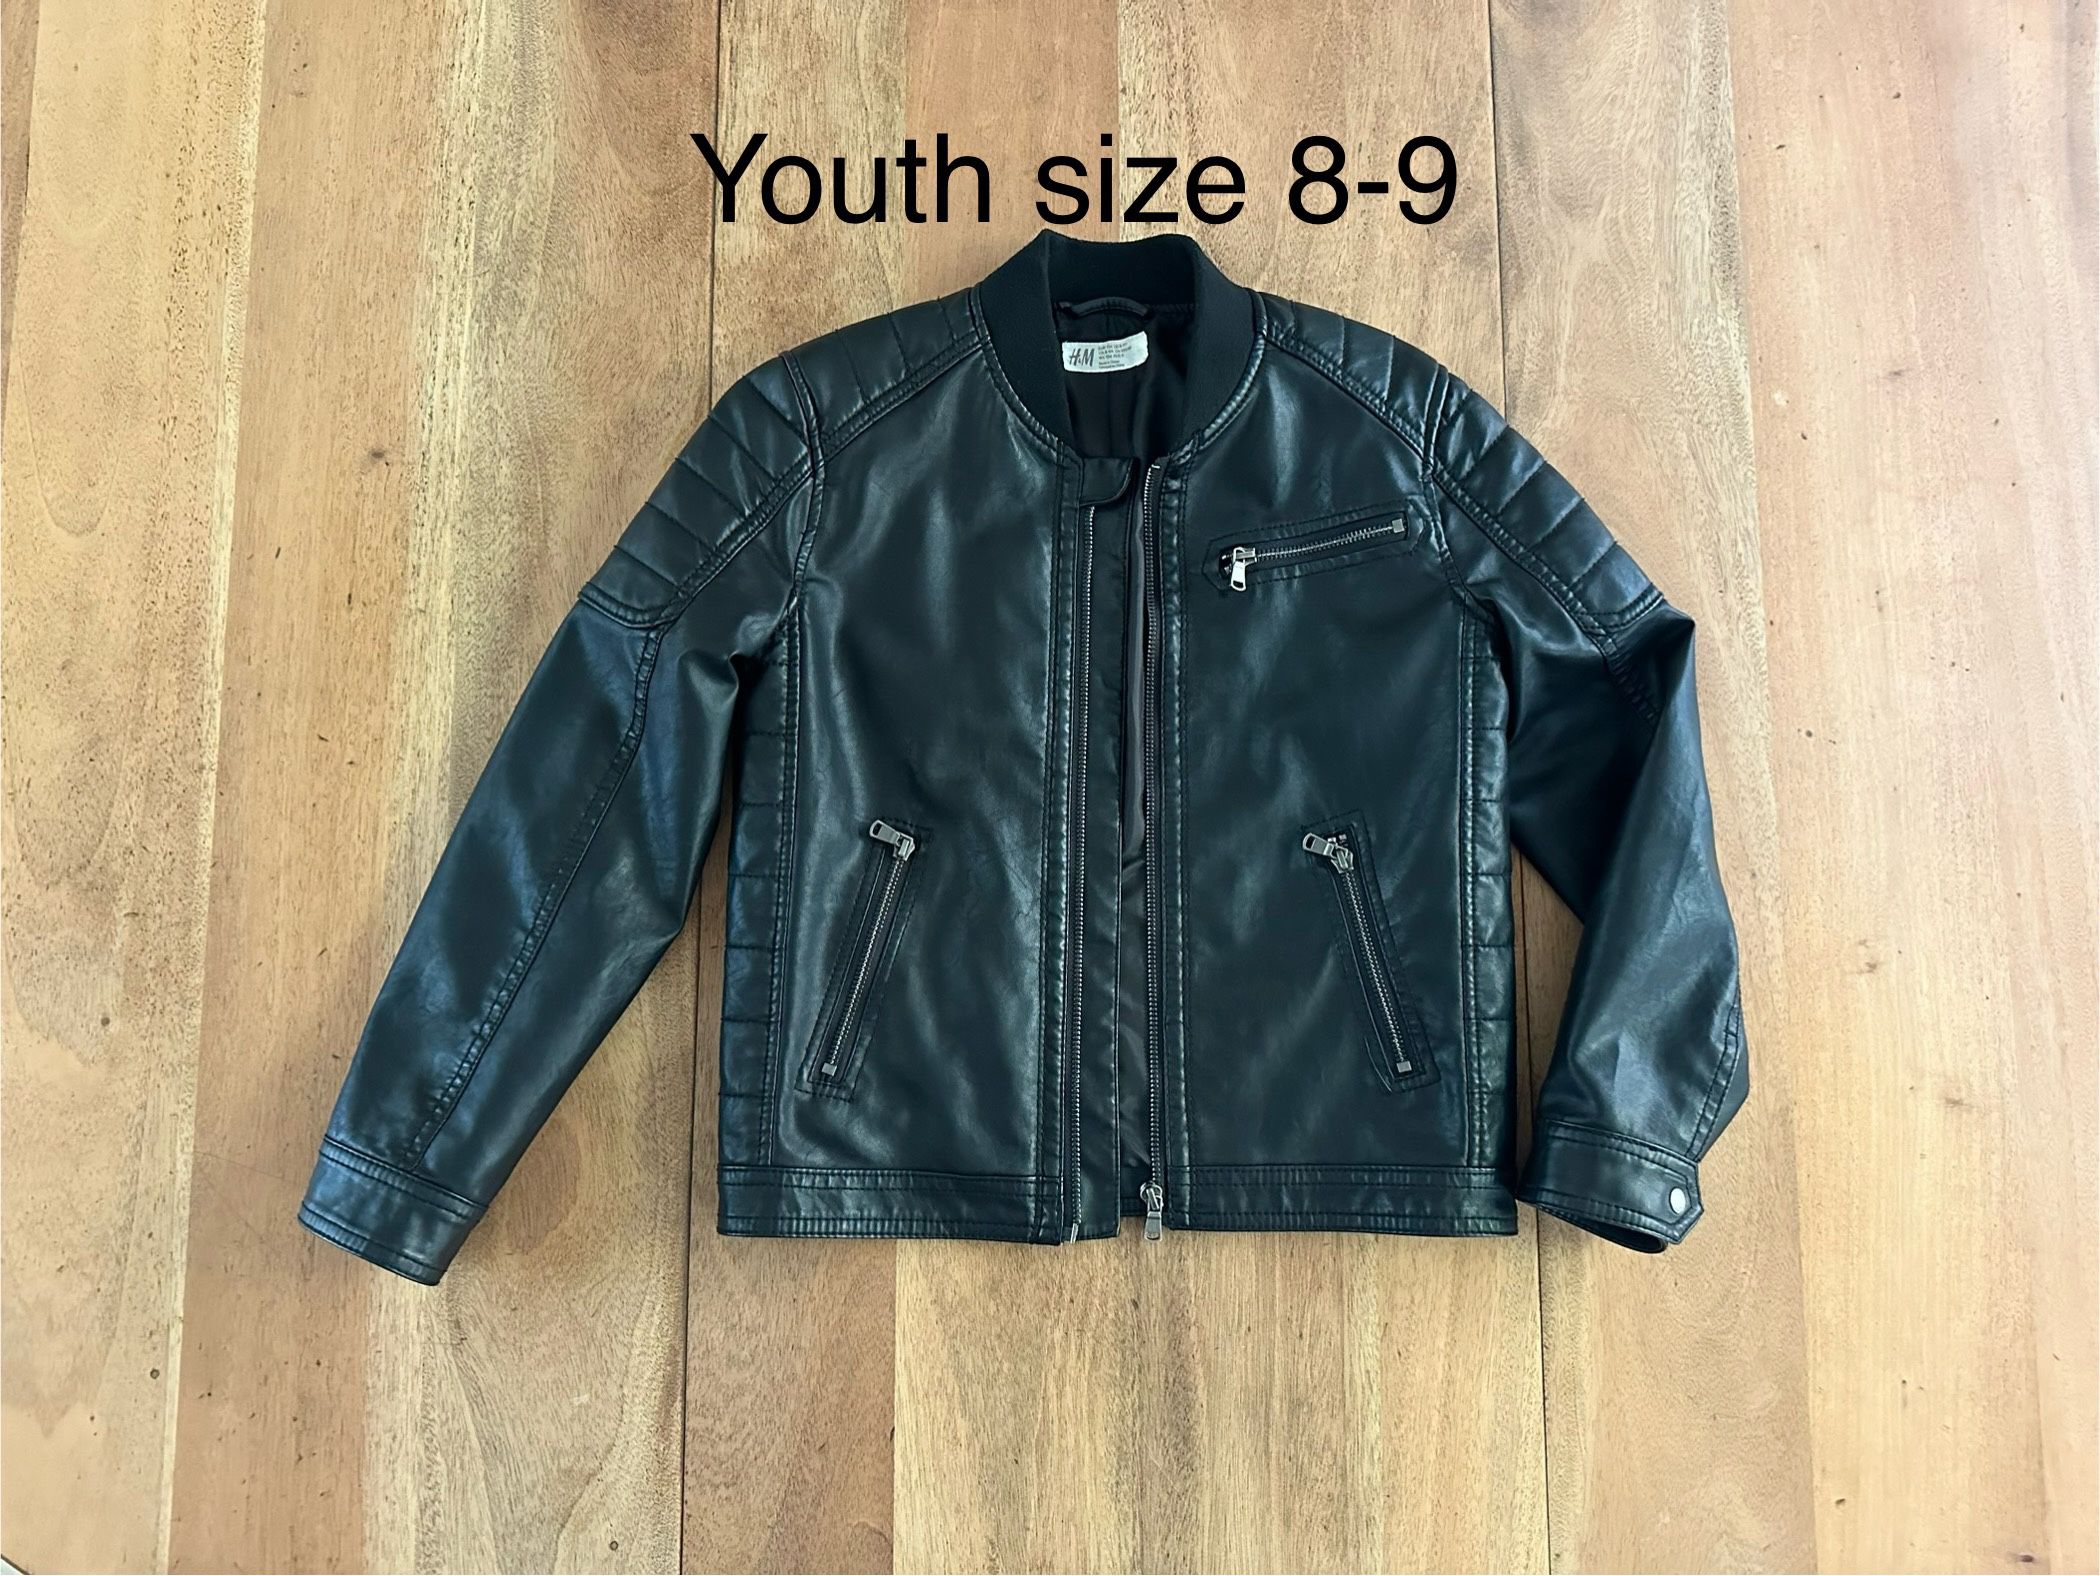 Youth Bomber Jacket Size 8-9